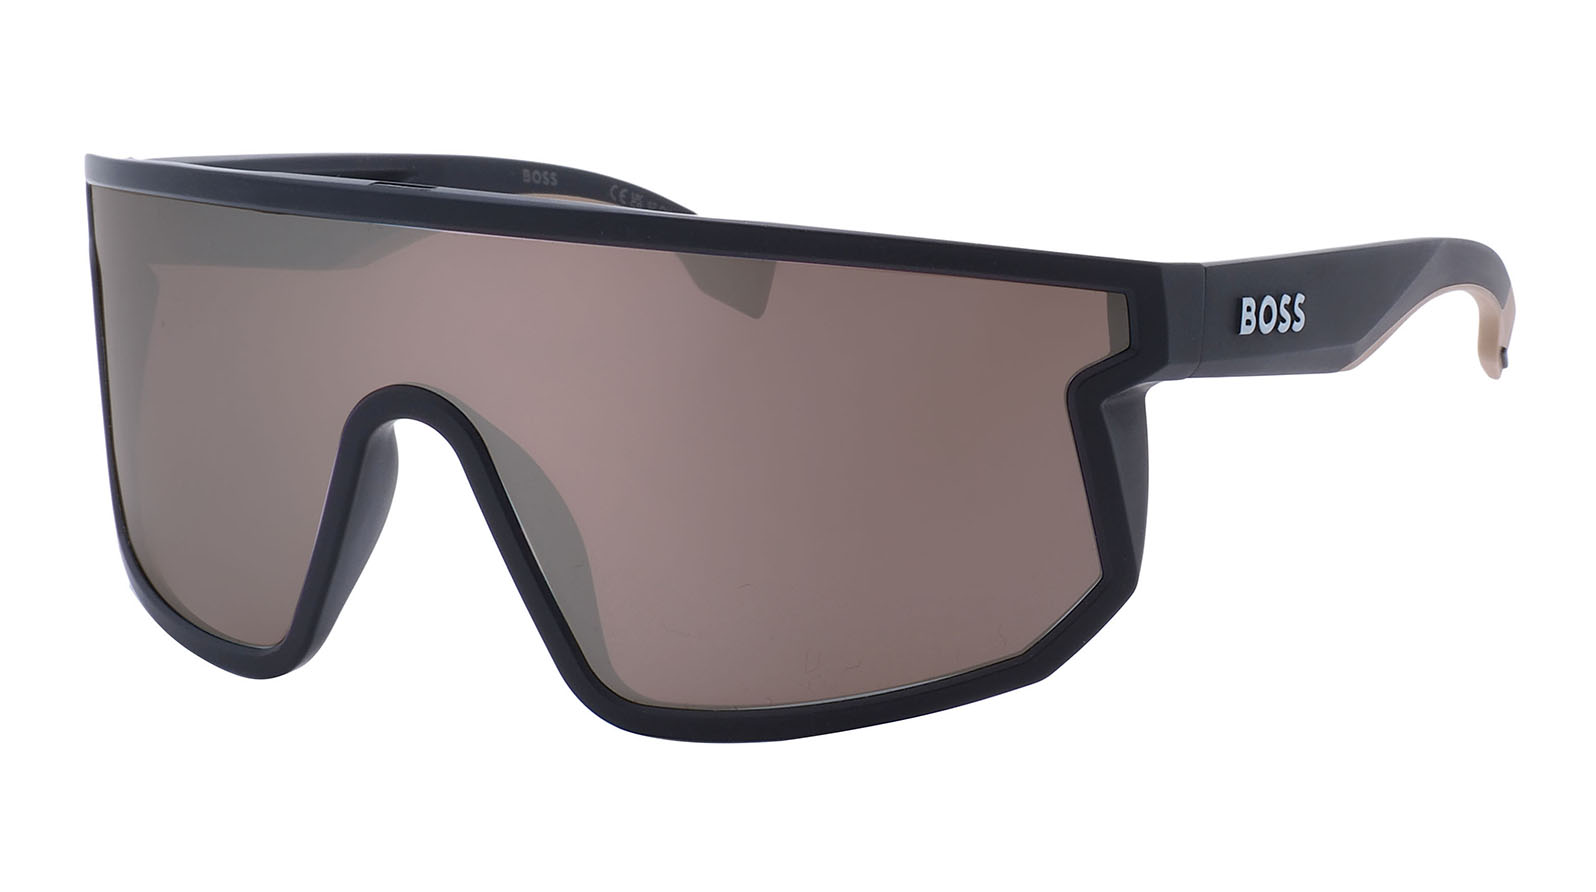 Hugo Boss 1499-S 087 фотохромные поляризованные солнцезащитные очки клип на солнцезащитные очки клип для вождения спорт на открытом воздухе рыбалка